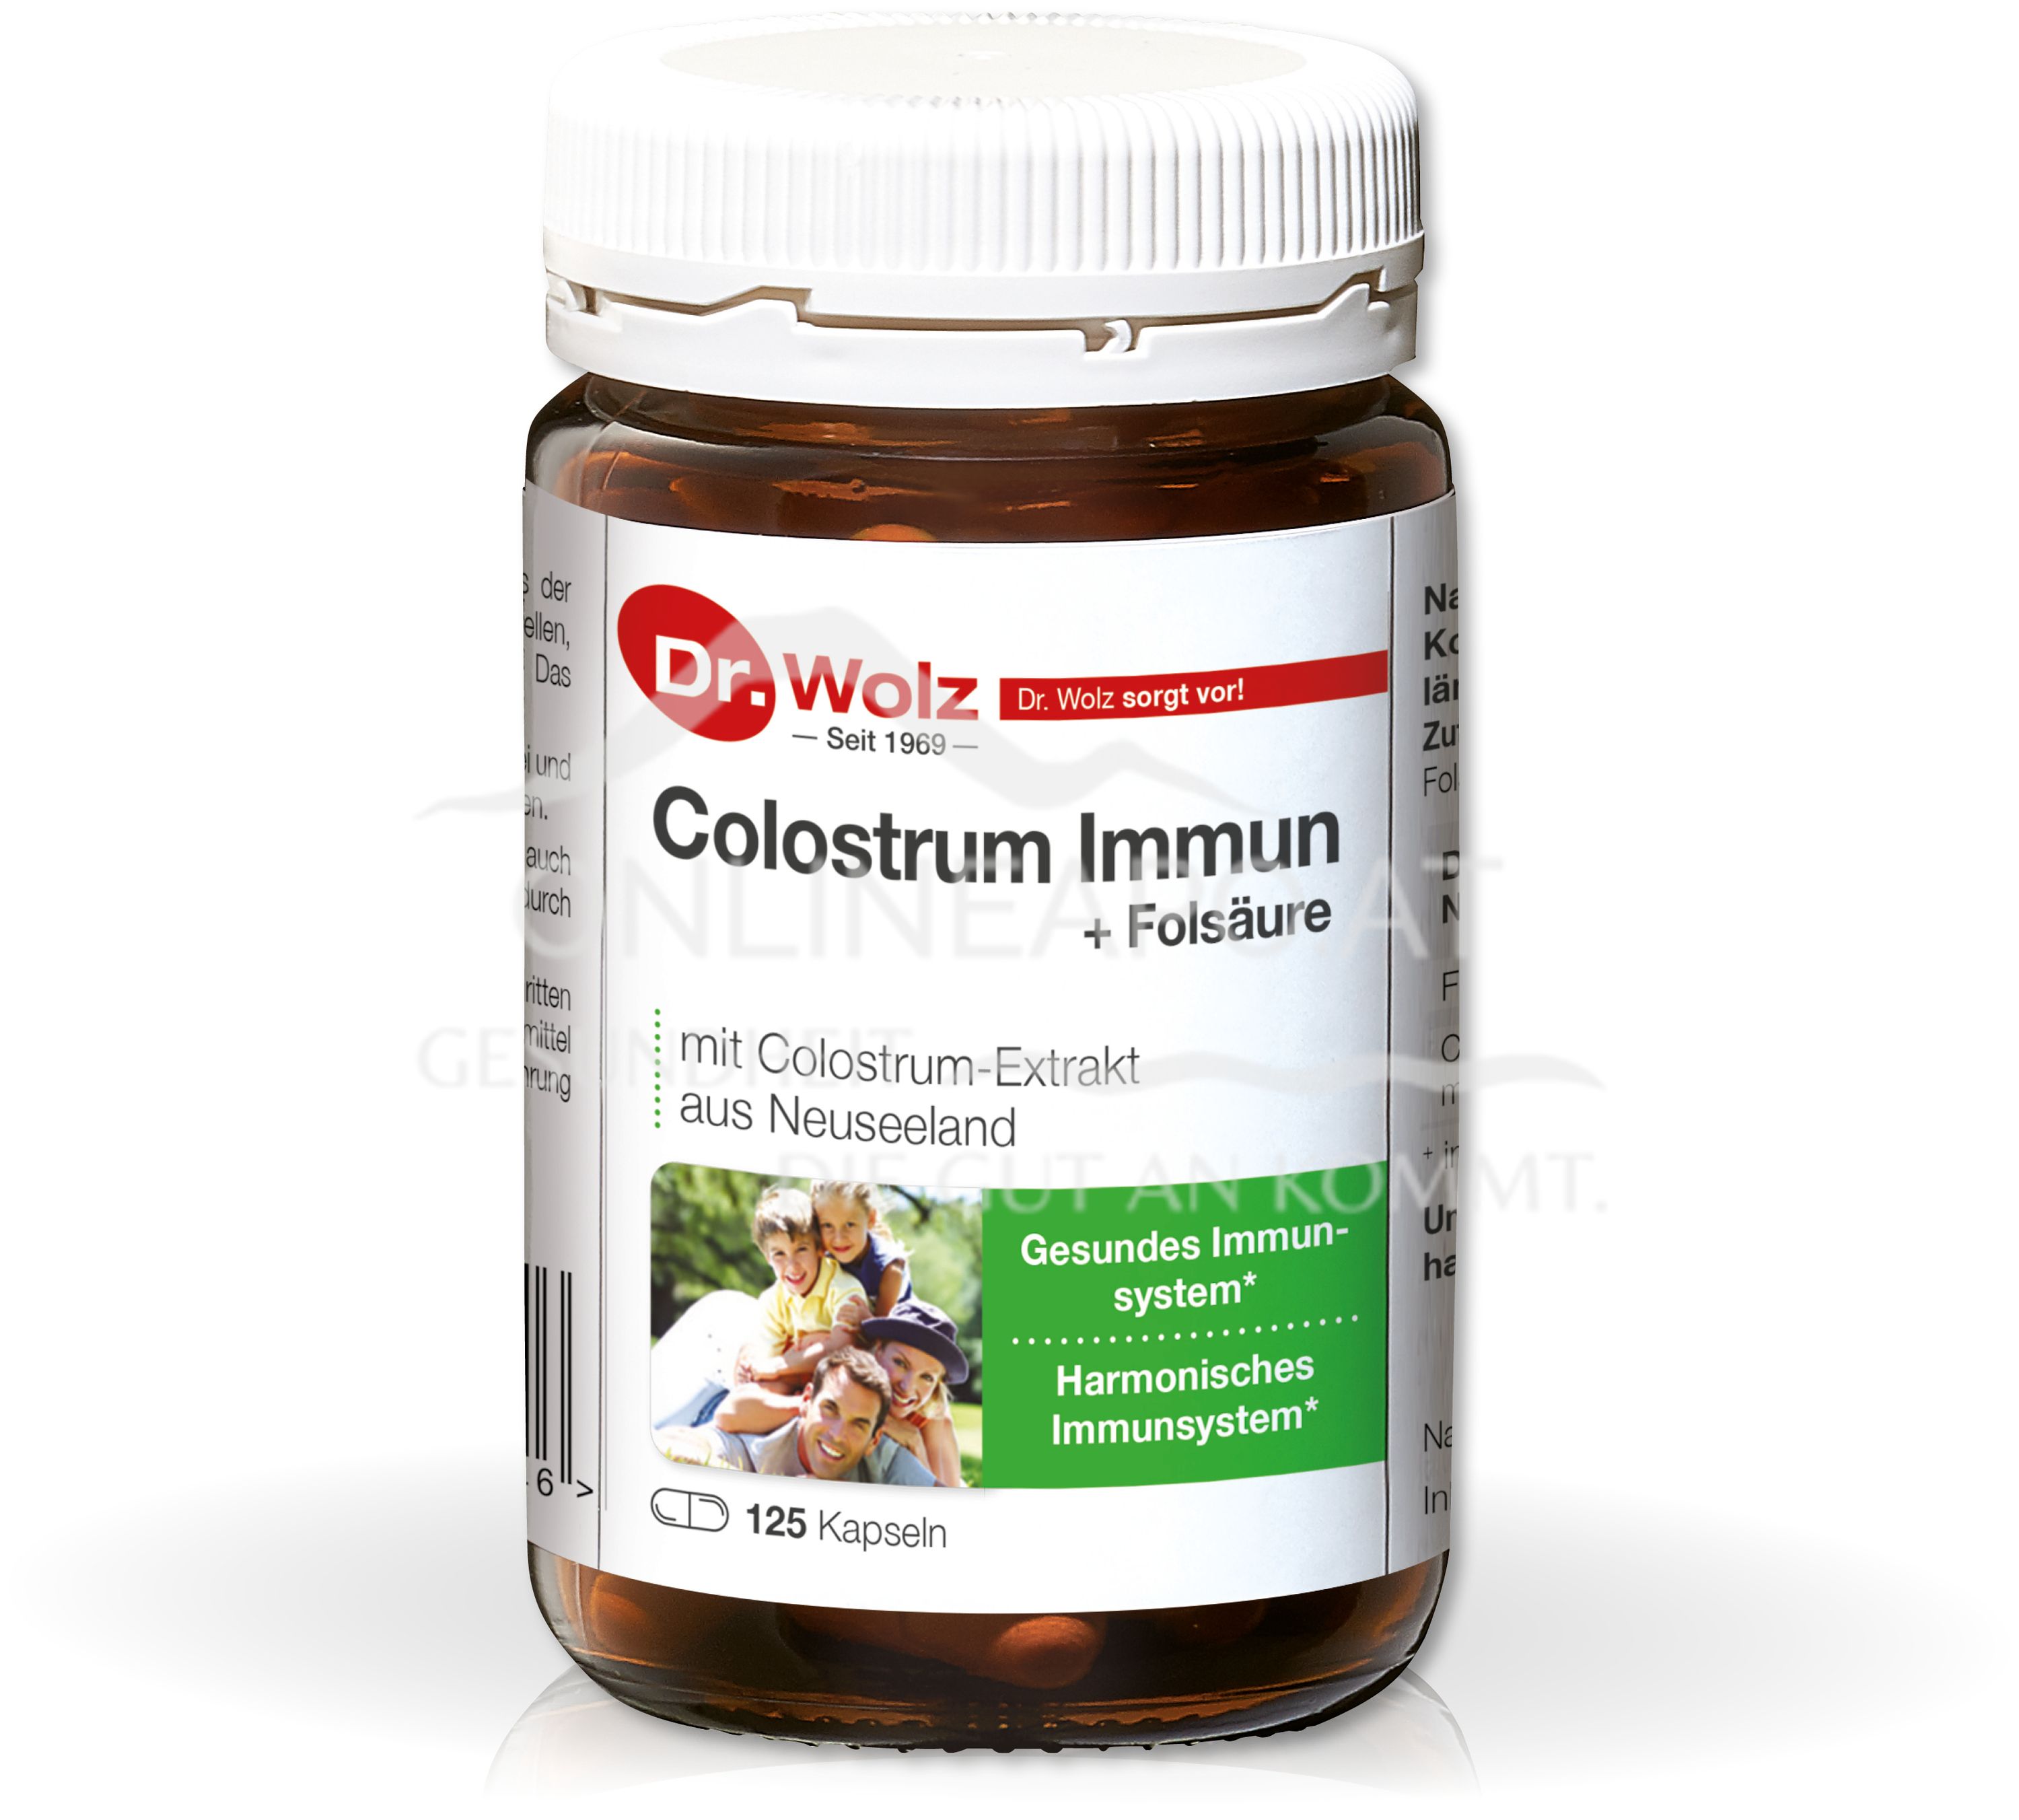 Dr. Wolz Colostrum Immun + Folsäure Kapseln